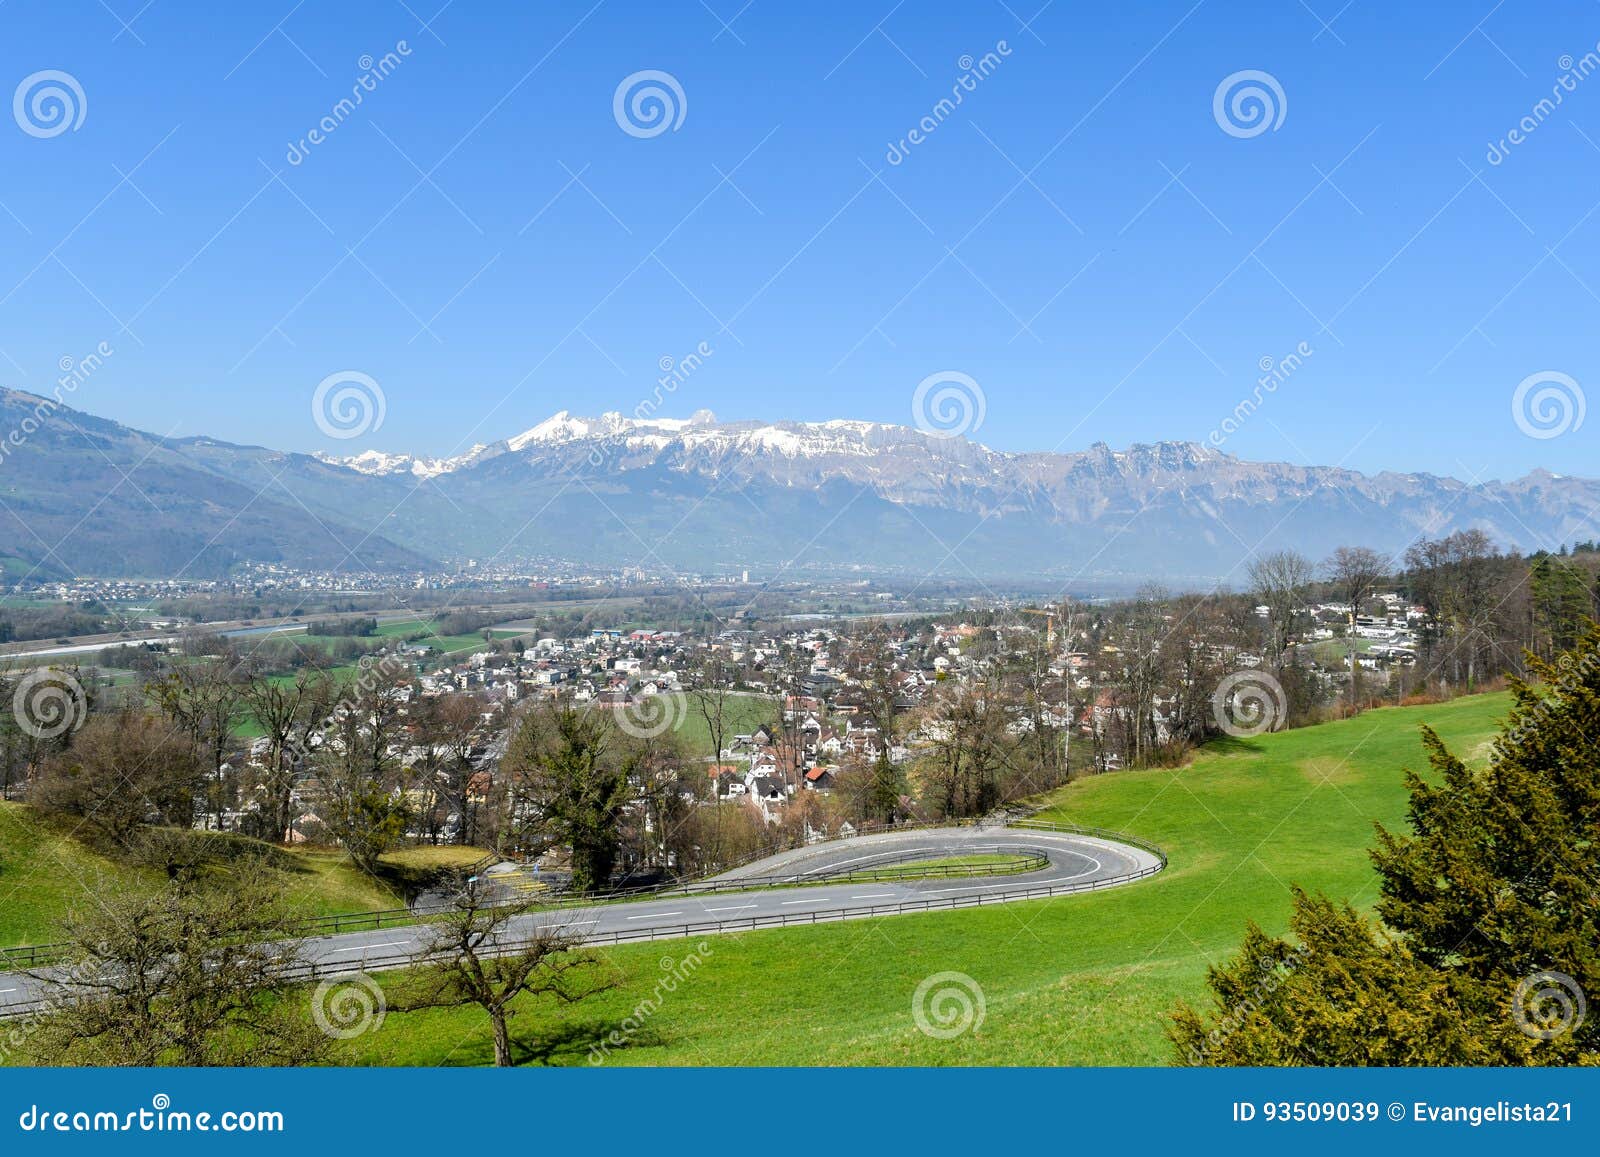 Alps View from Vaduz - Liechtenstein Stock Image - Image of castle ...